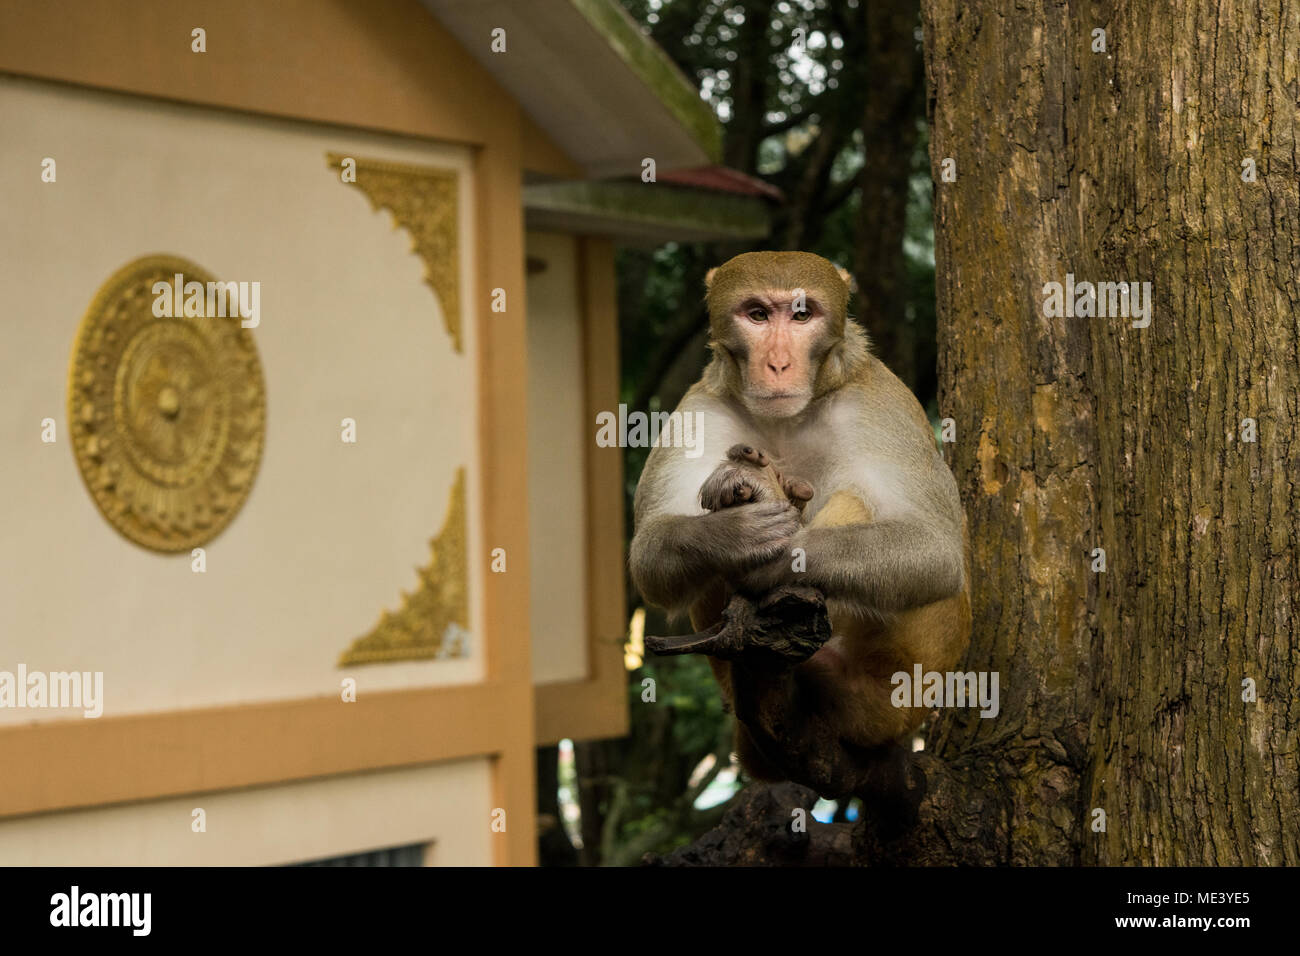 Un singe macaque adultes sauvages, rencontrés au mont Popa, assis sur une branche d'arbre, le calme comme si méditer. repos, refroidissement sur stick. La Birmanie, Myanmar Banque D'Images